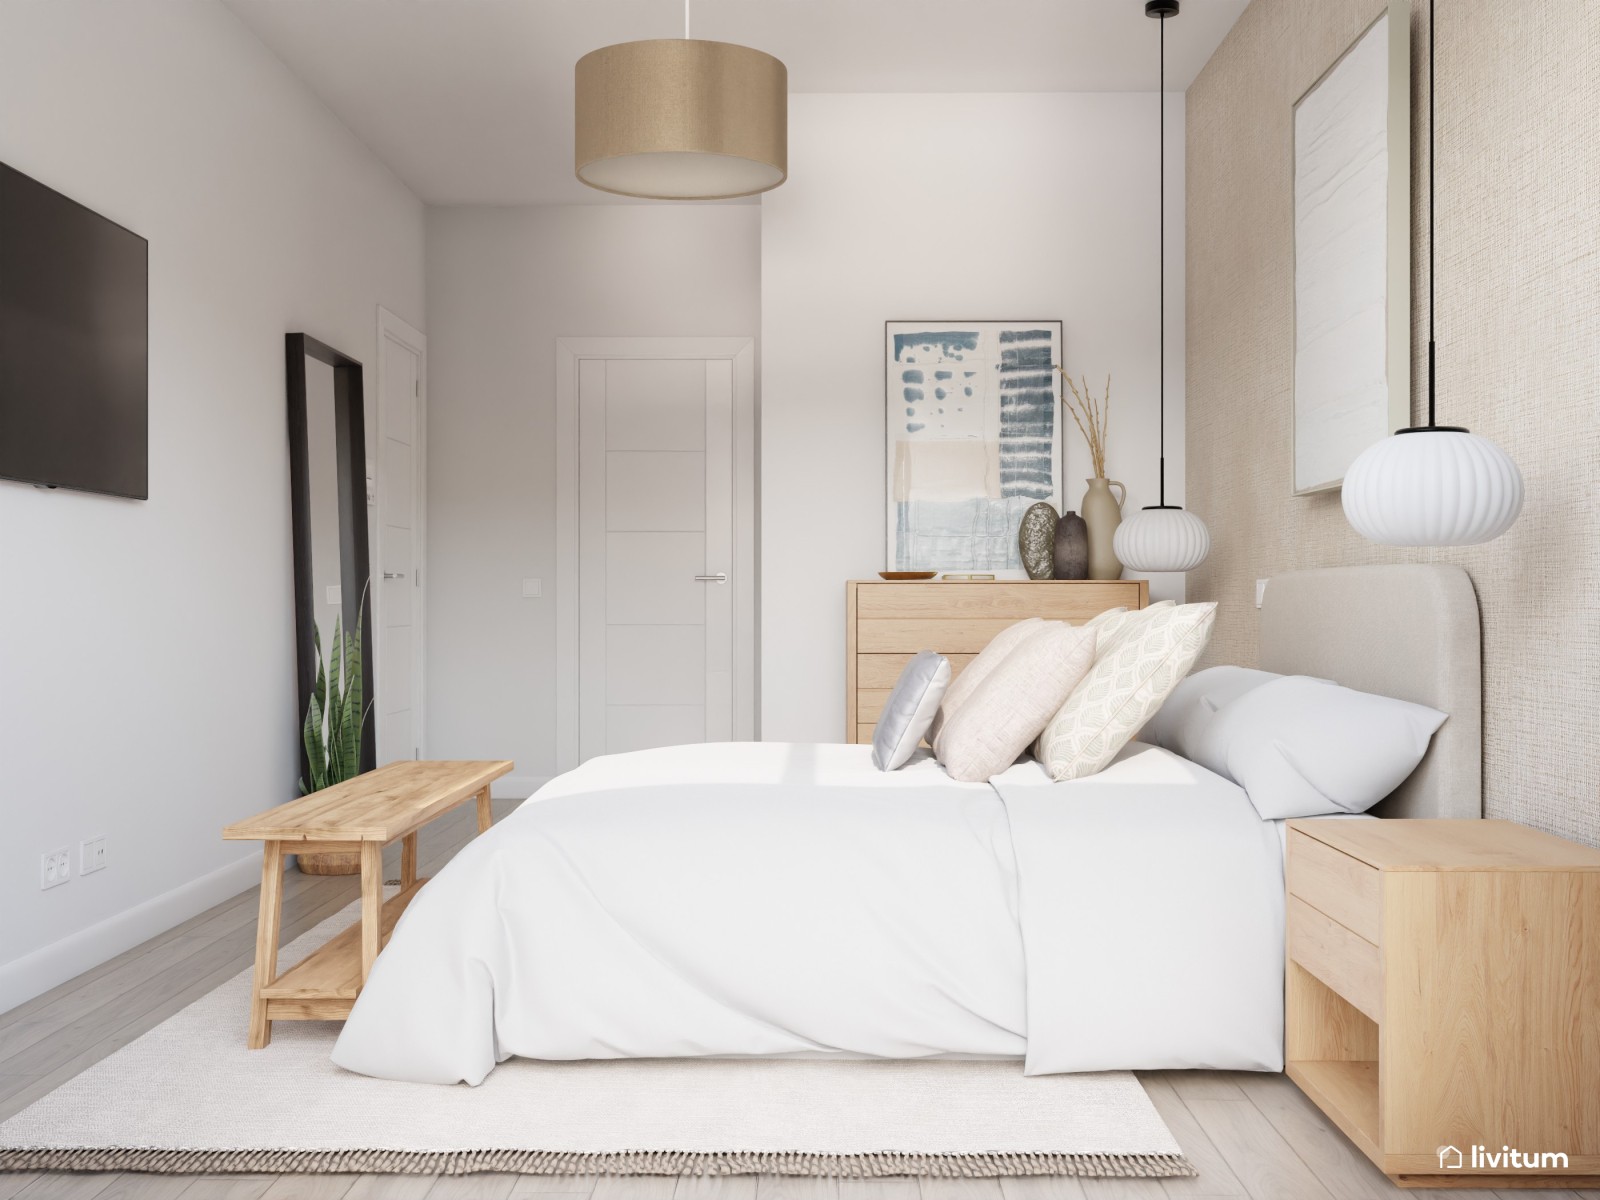 Dormitorio moderno y minimalista con lámparas colgantes 